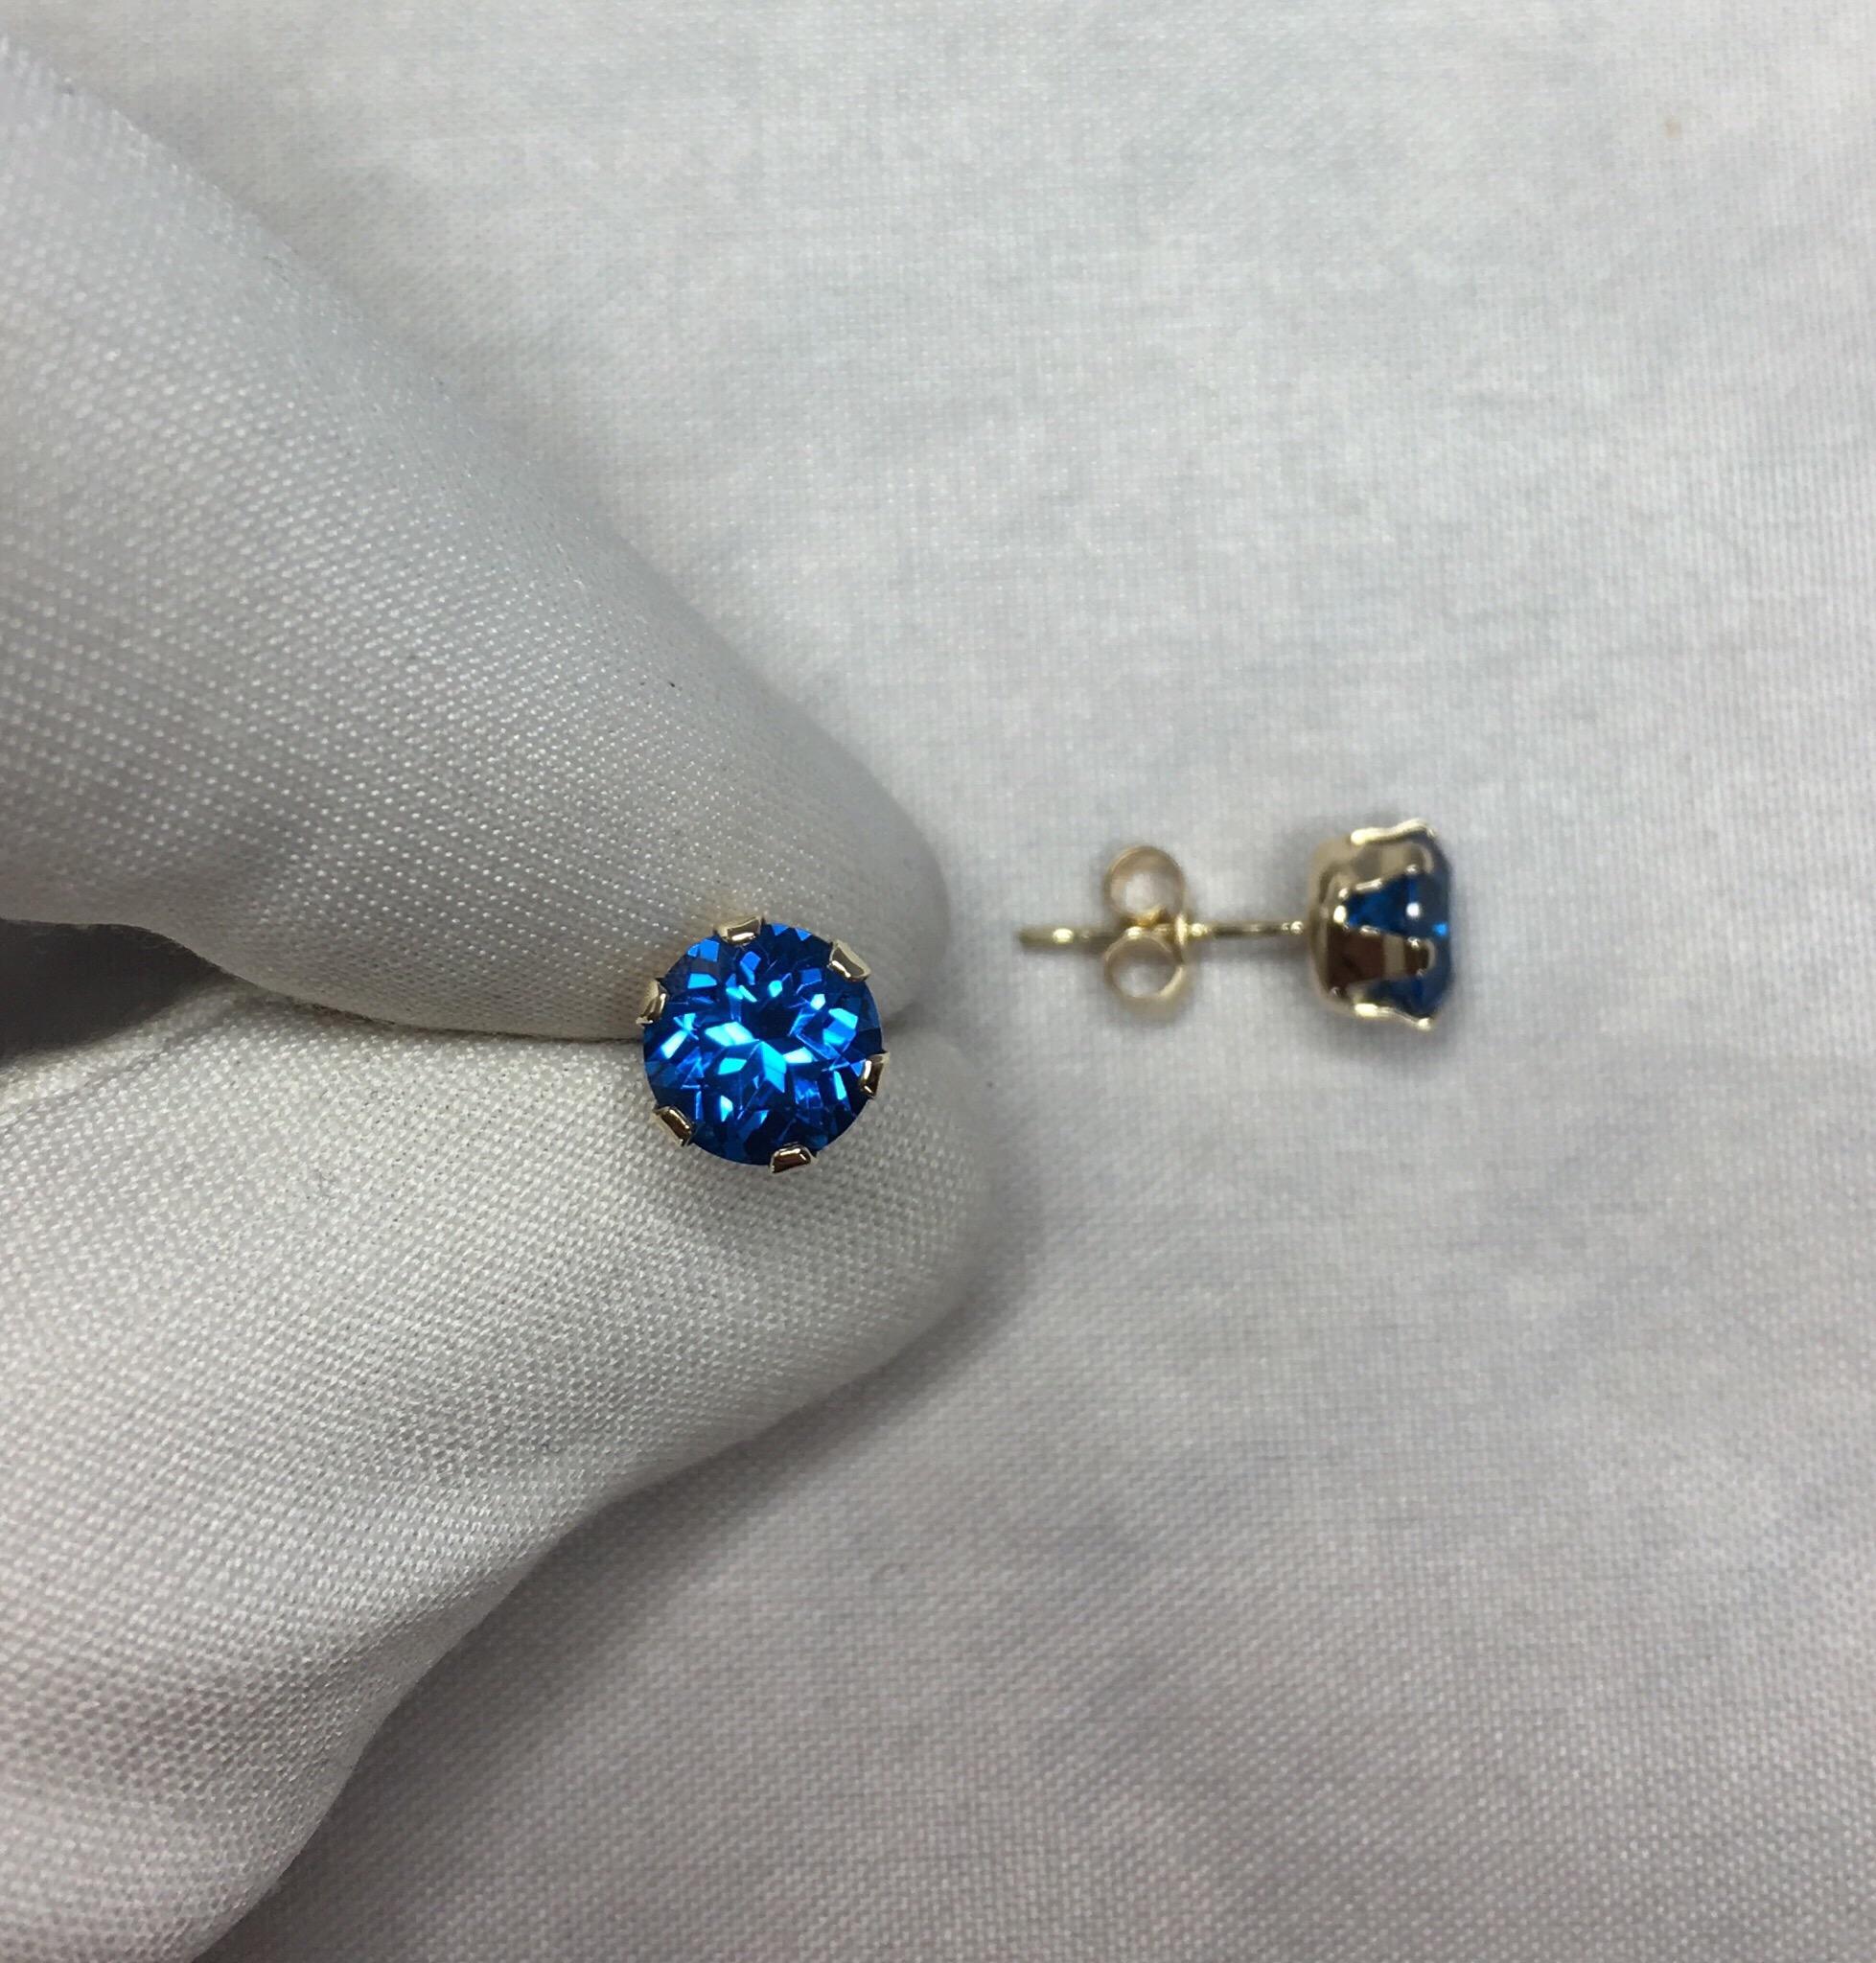 2 carat blue topaz earrings